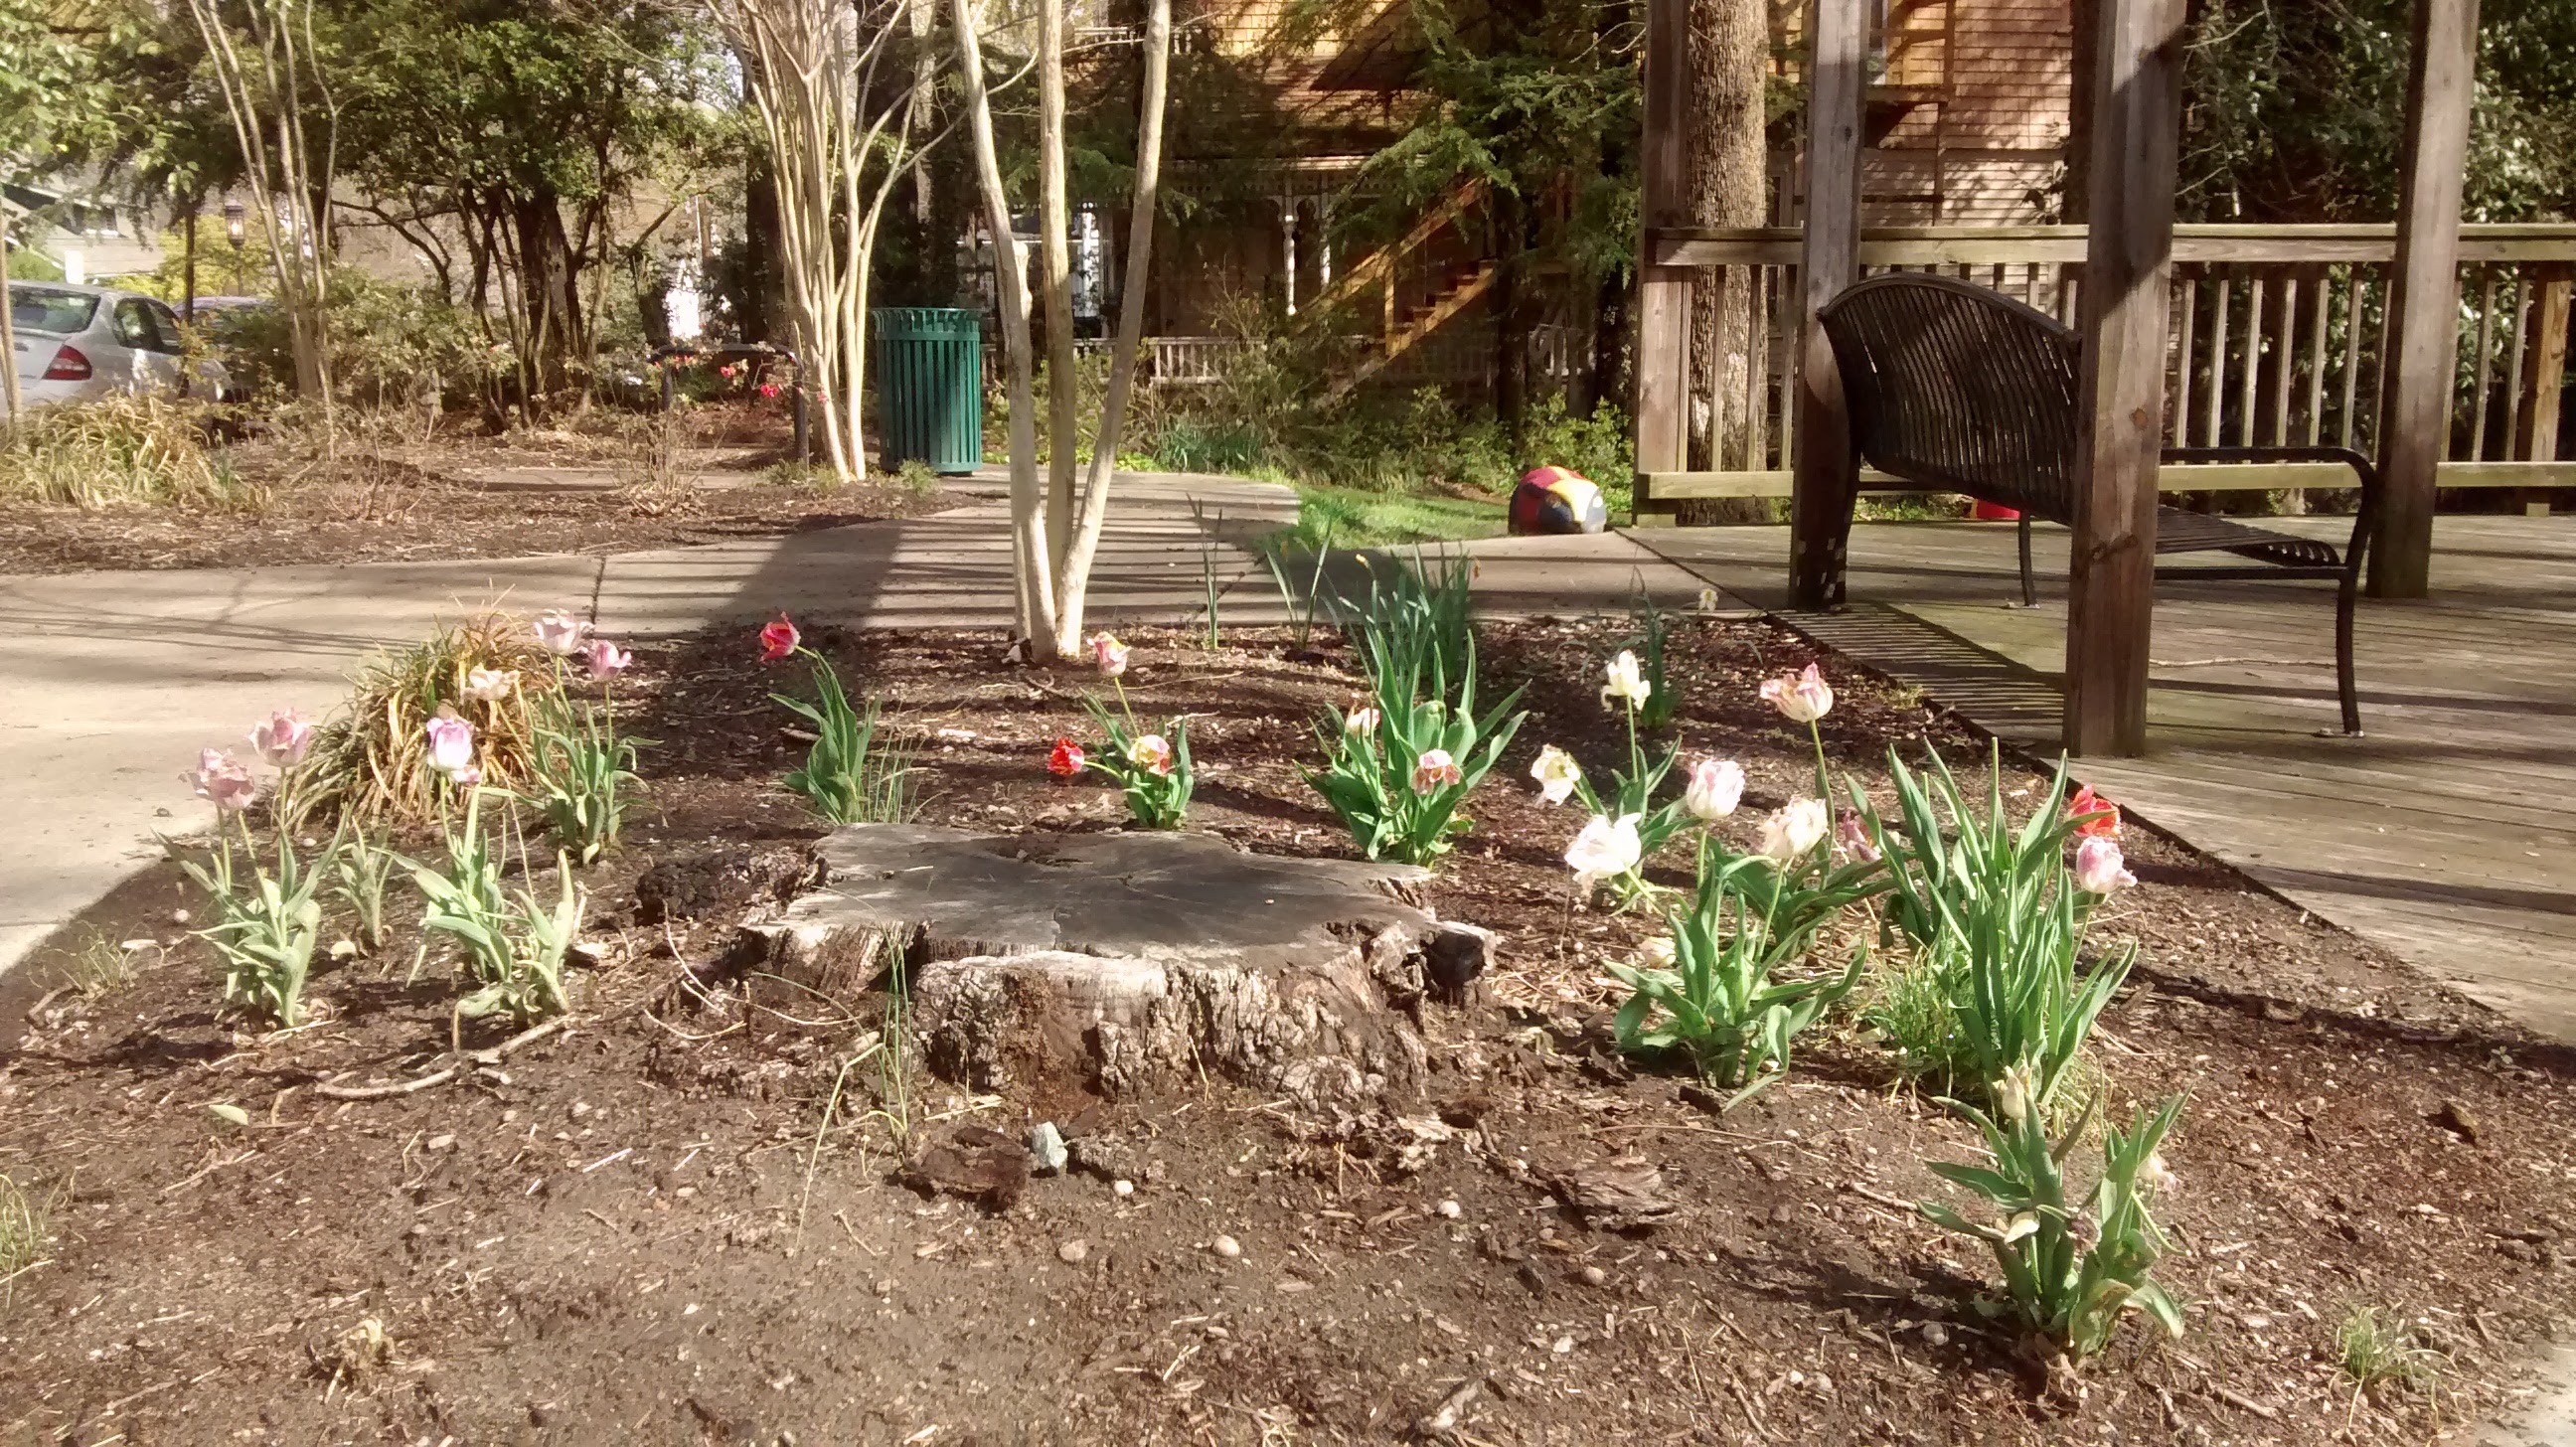 Tulips in Sprindale Park